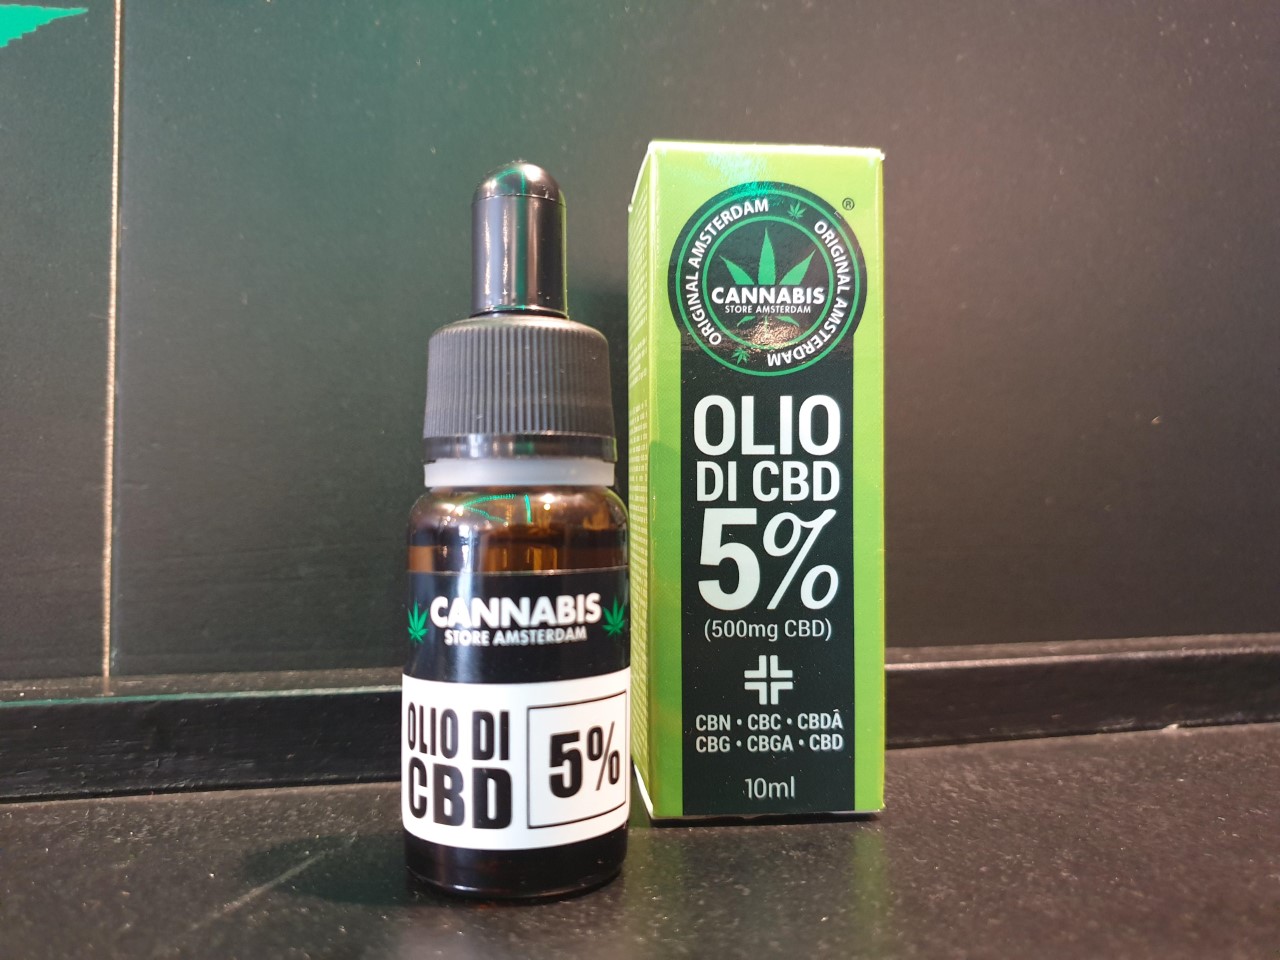 OLIO DI CBD 5% FULL SPECTRUM - Cannabis Store Moncalieri